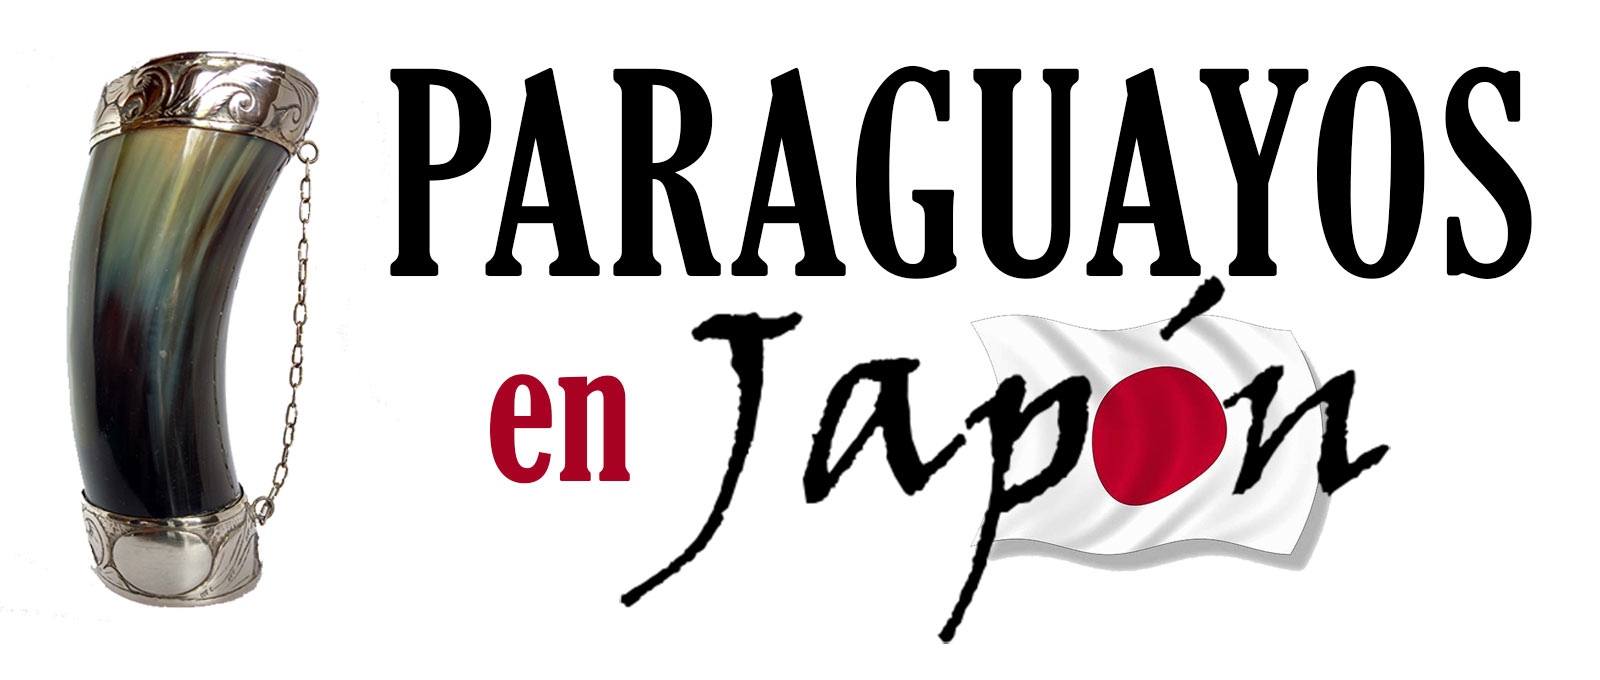 Paraguayos en Japón